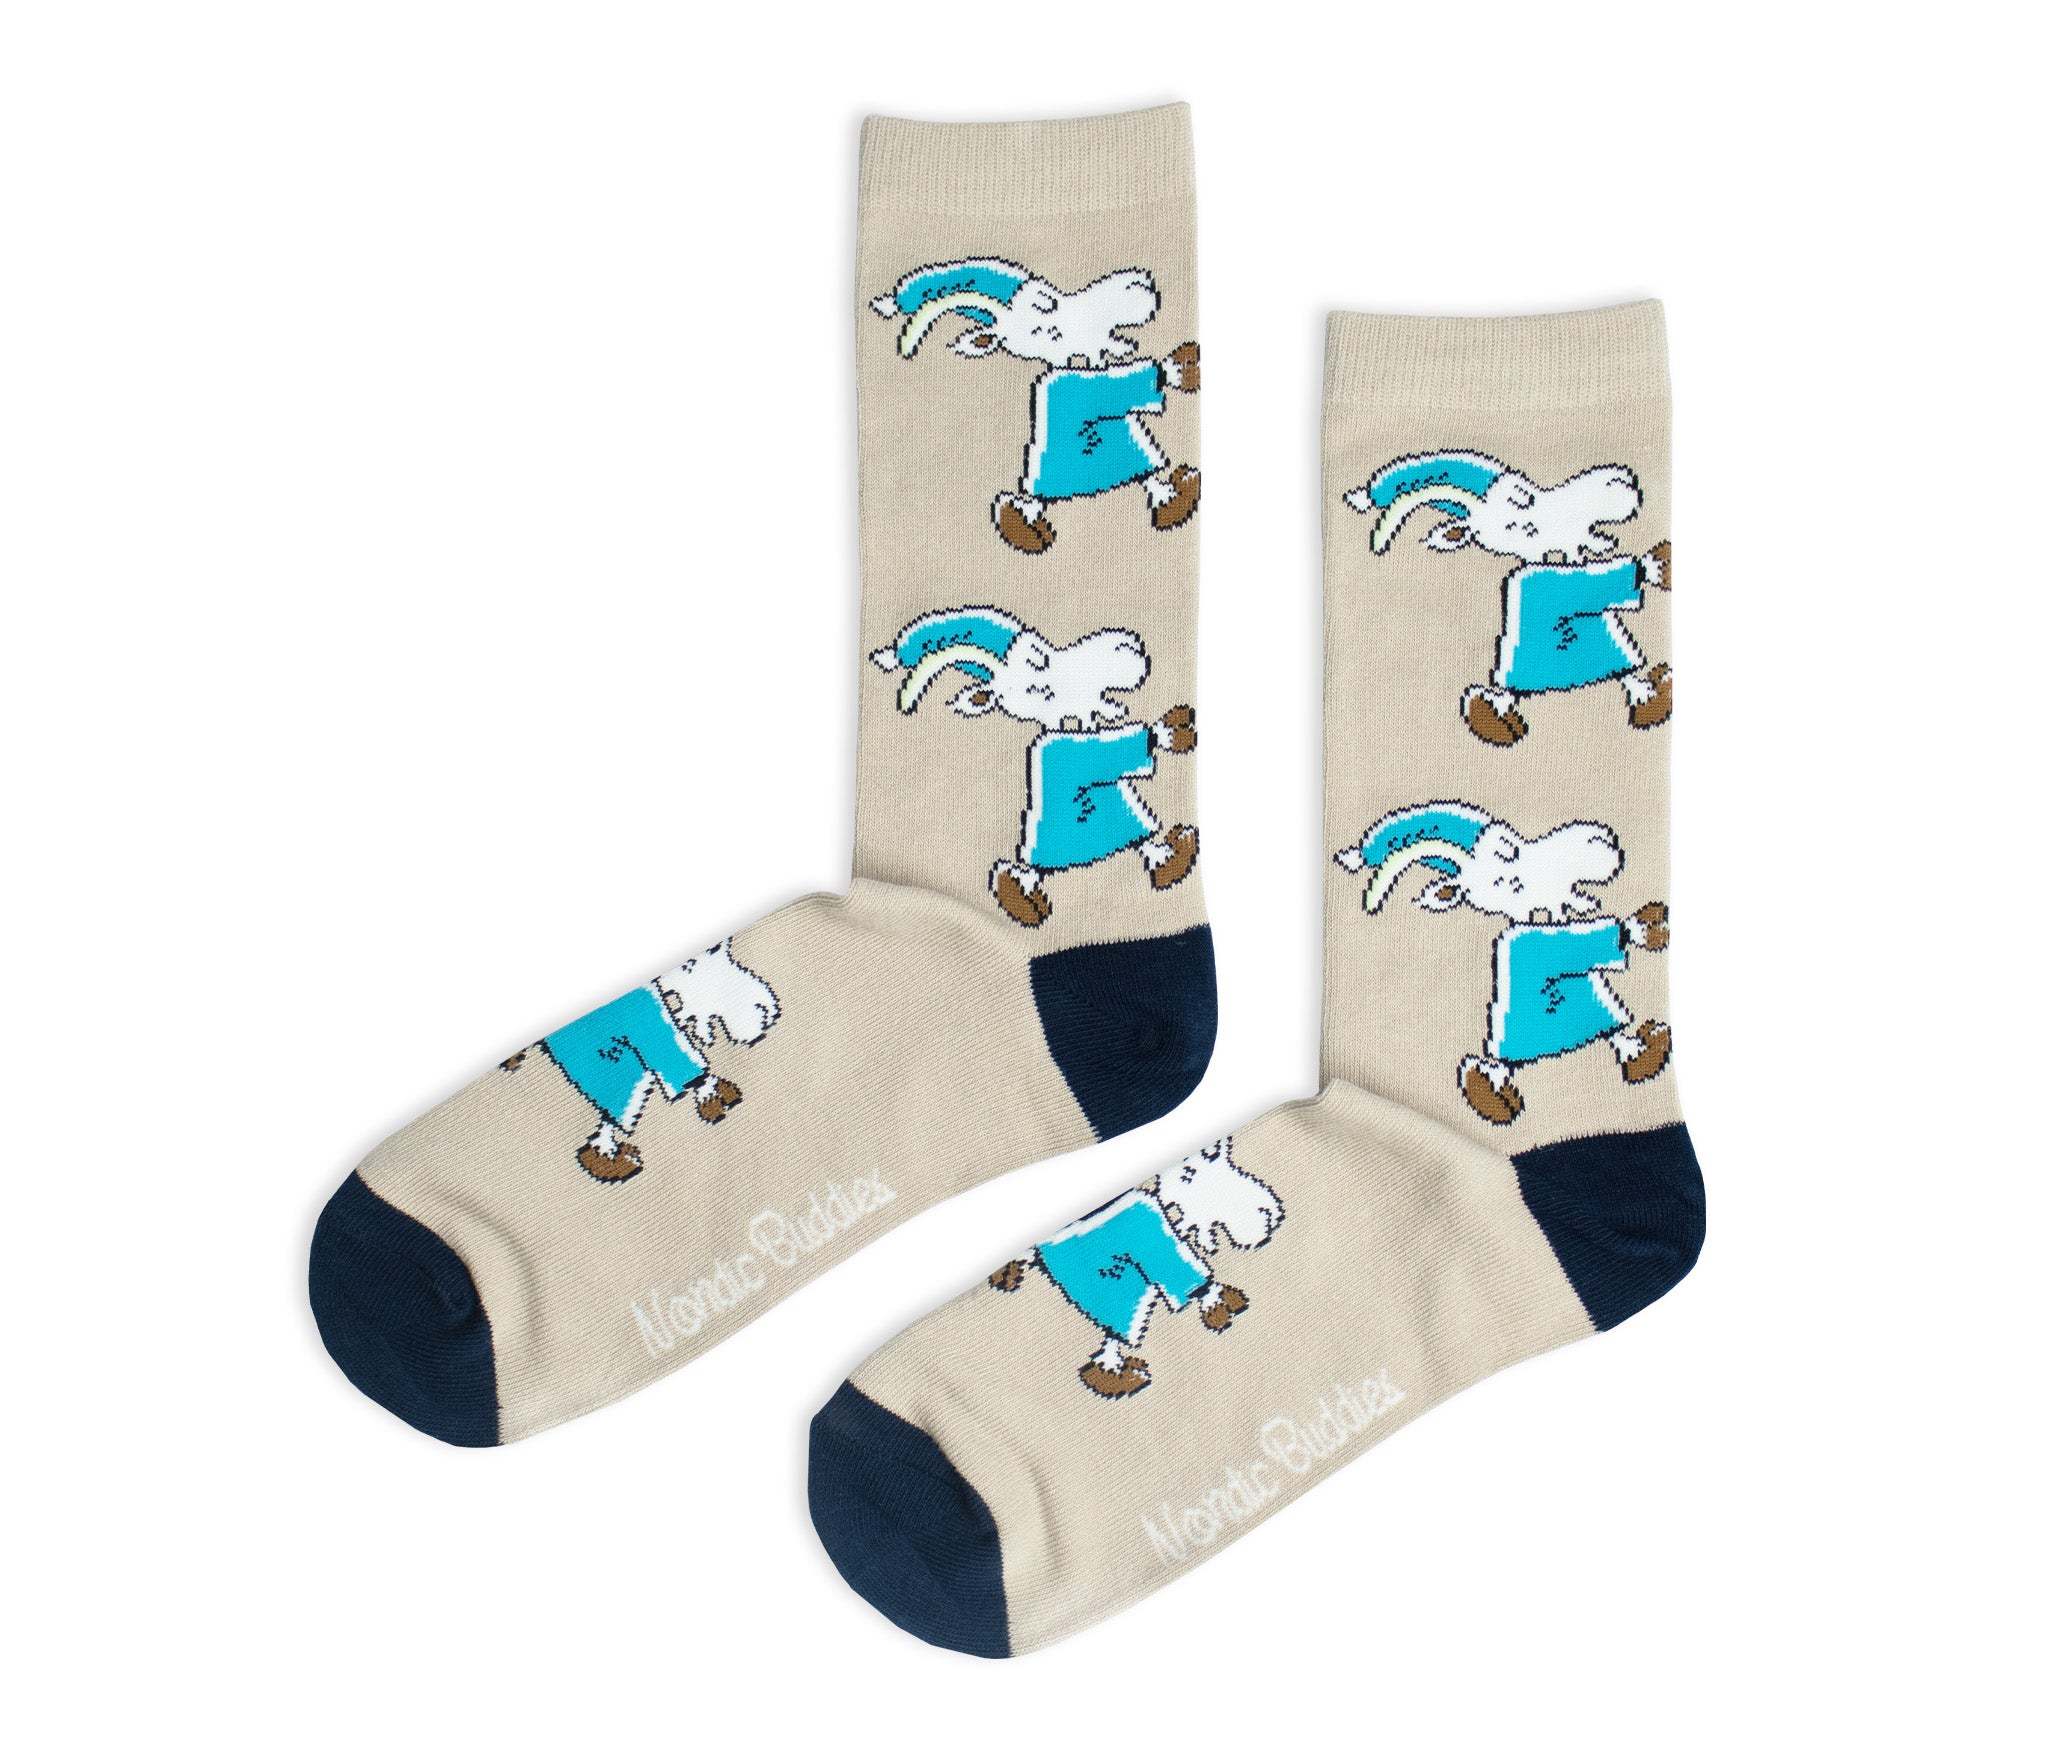 Mr. Clutterbuck Men Socks - Beige